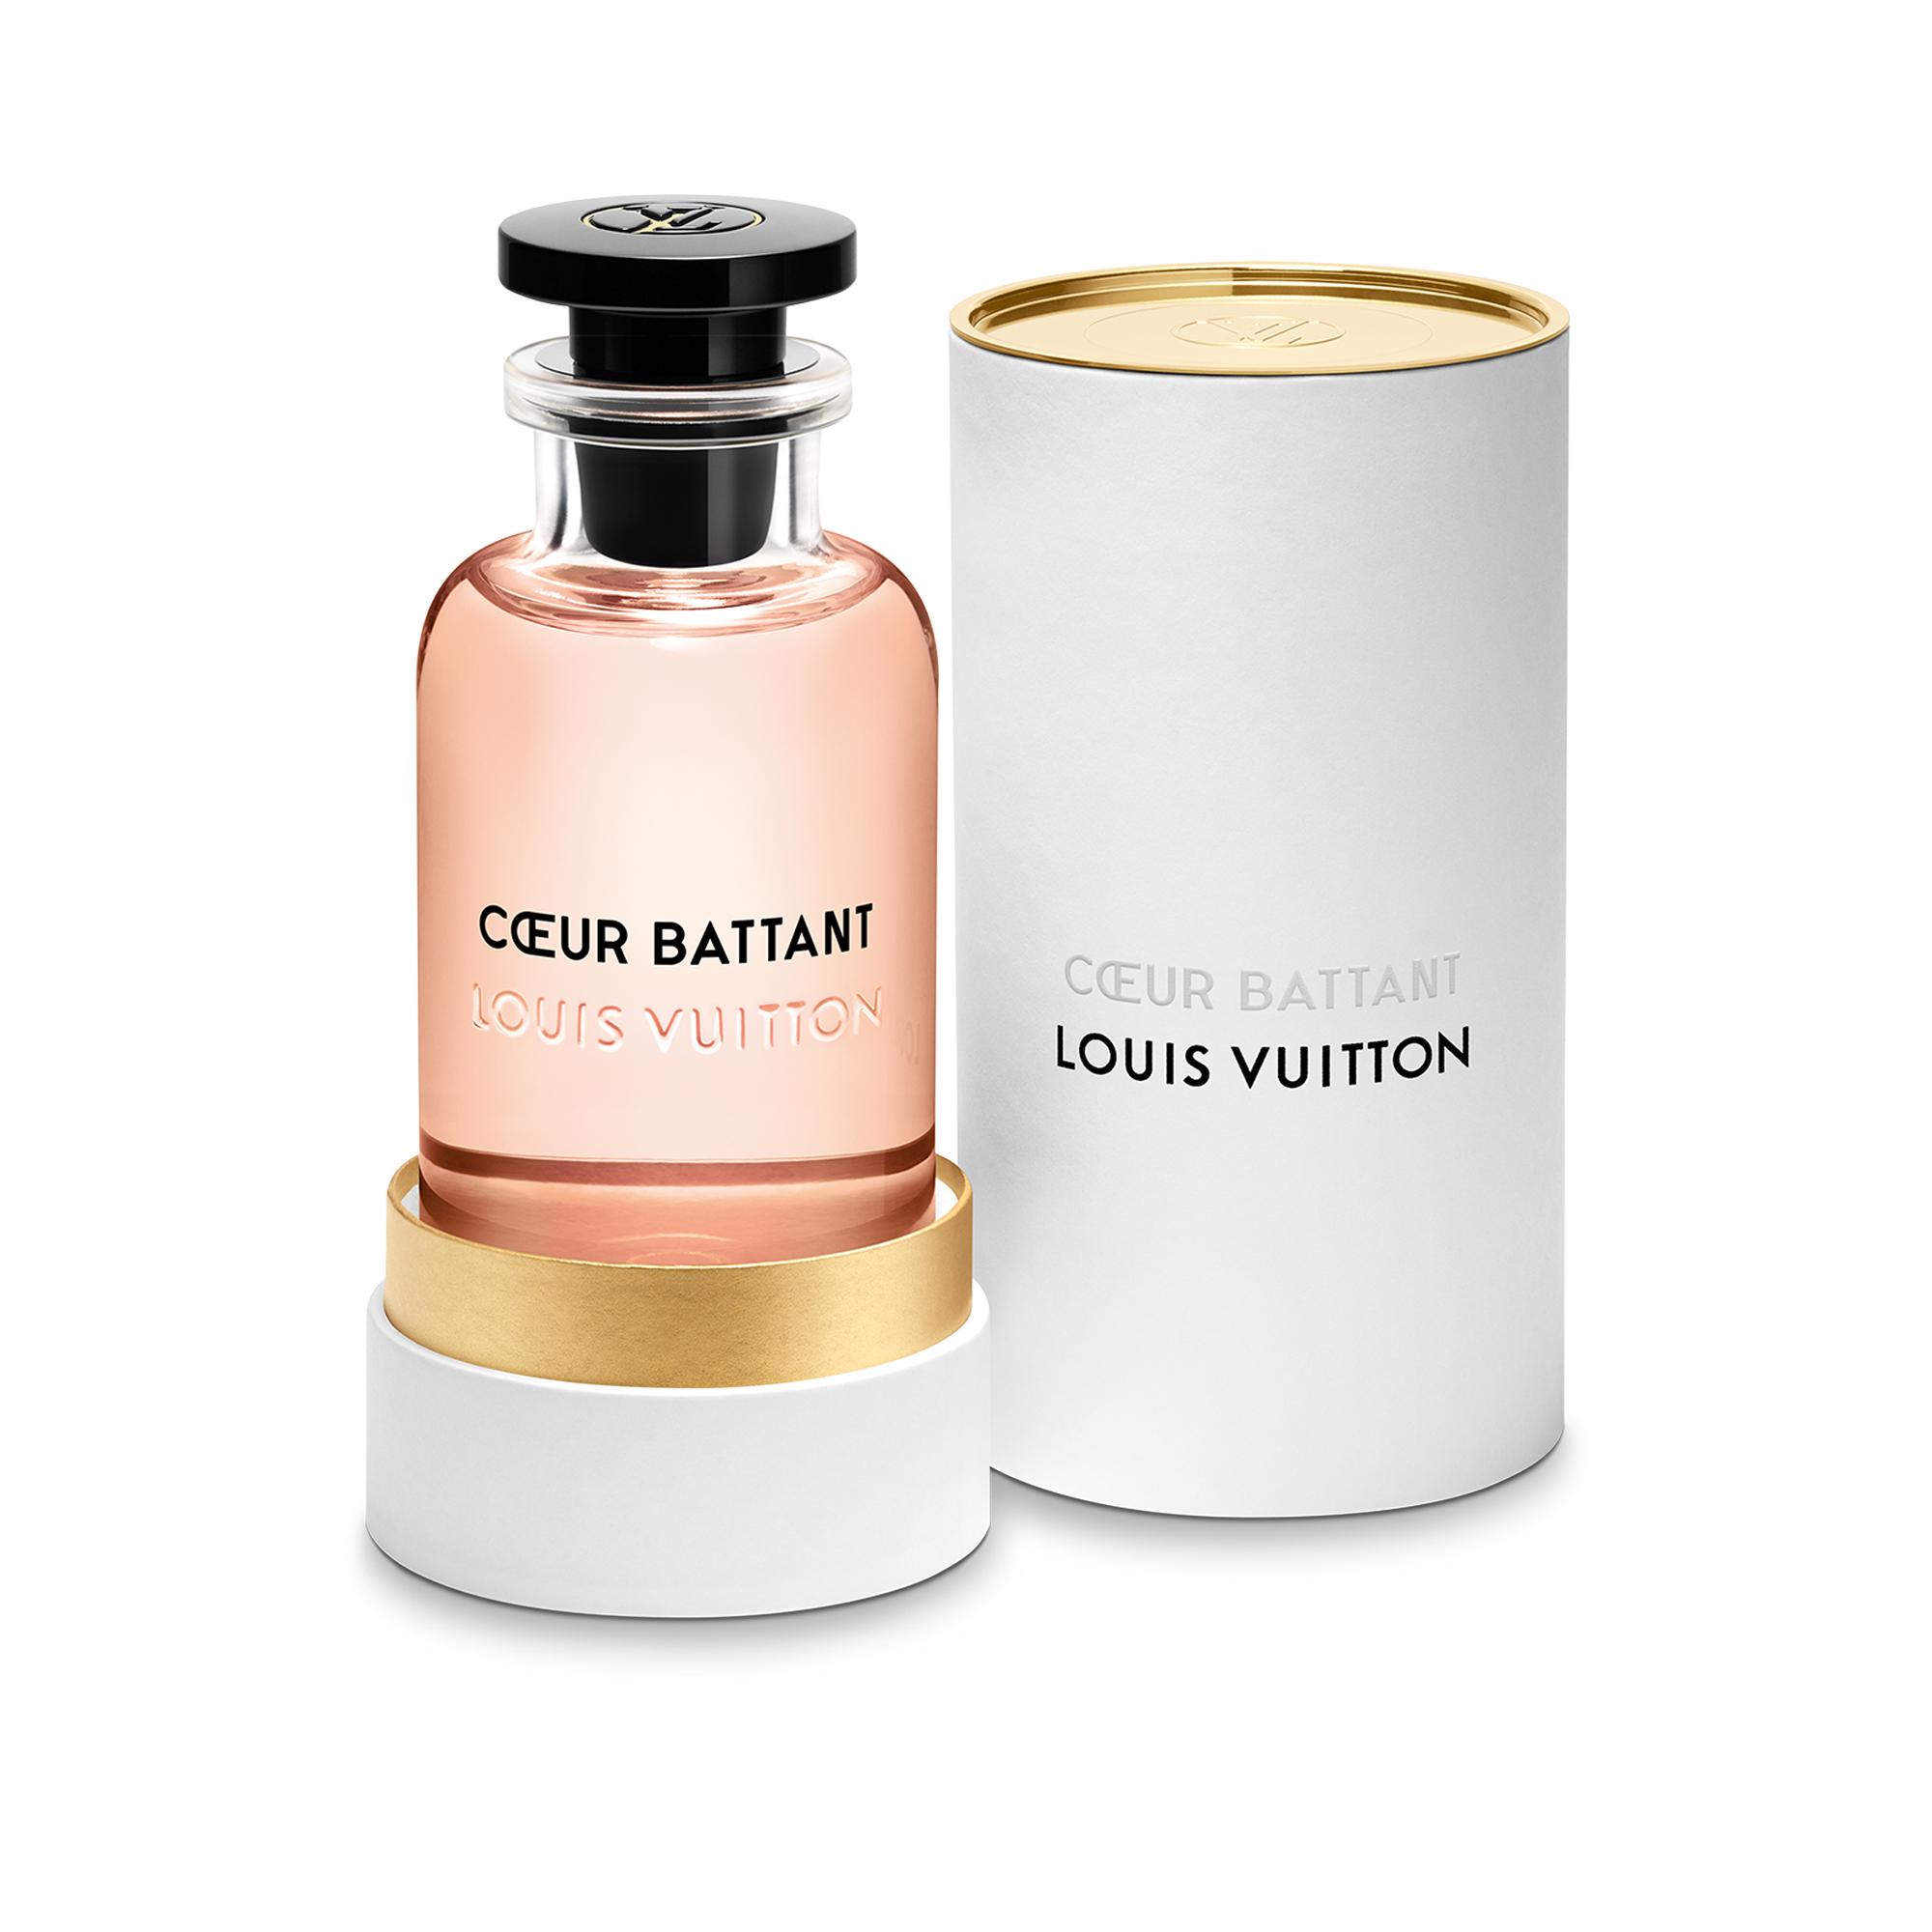 Cœur Battant Louis Vuitton perfume - a new fragrance for women 2019